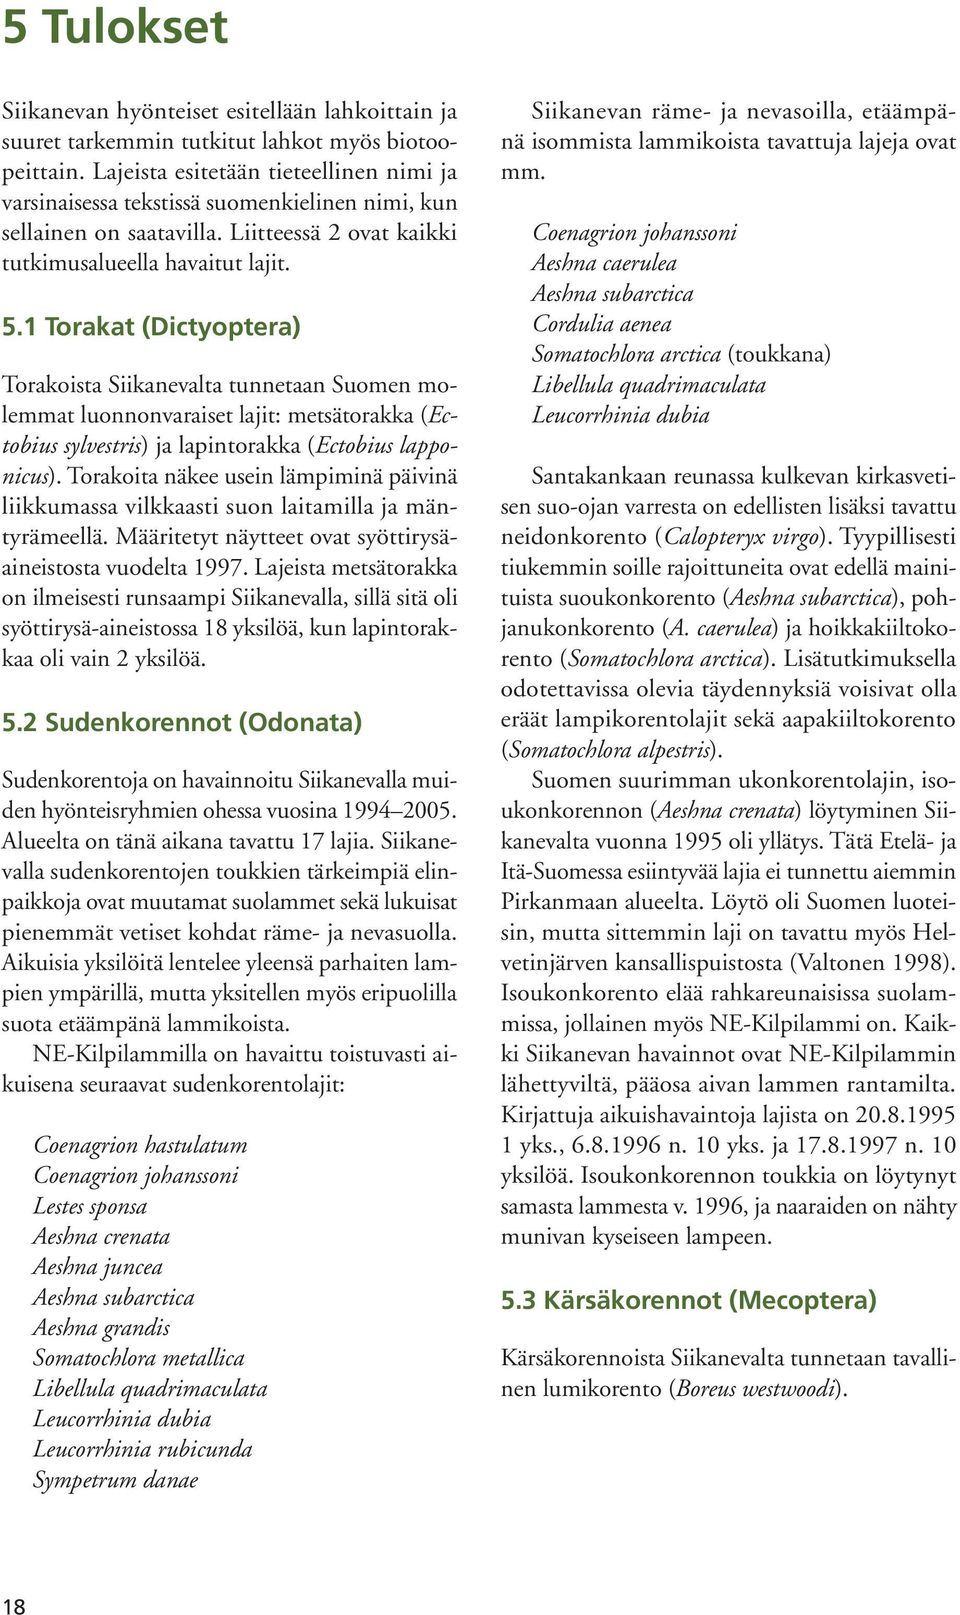 1 Torakat (Dictyoptera) Torakoista Siikanevalta tunnetaan Suomen molemmat luonnonvaraiset lajit: metsätorakka (Ectobius sylvestris) ja lapintorakka (Ectobius lapponicus).